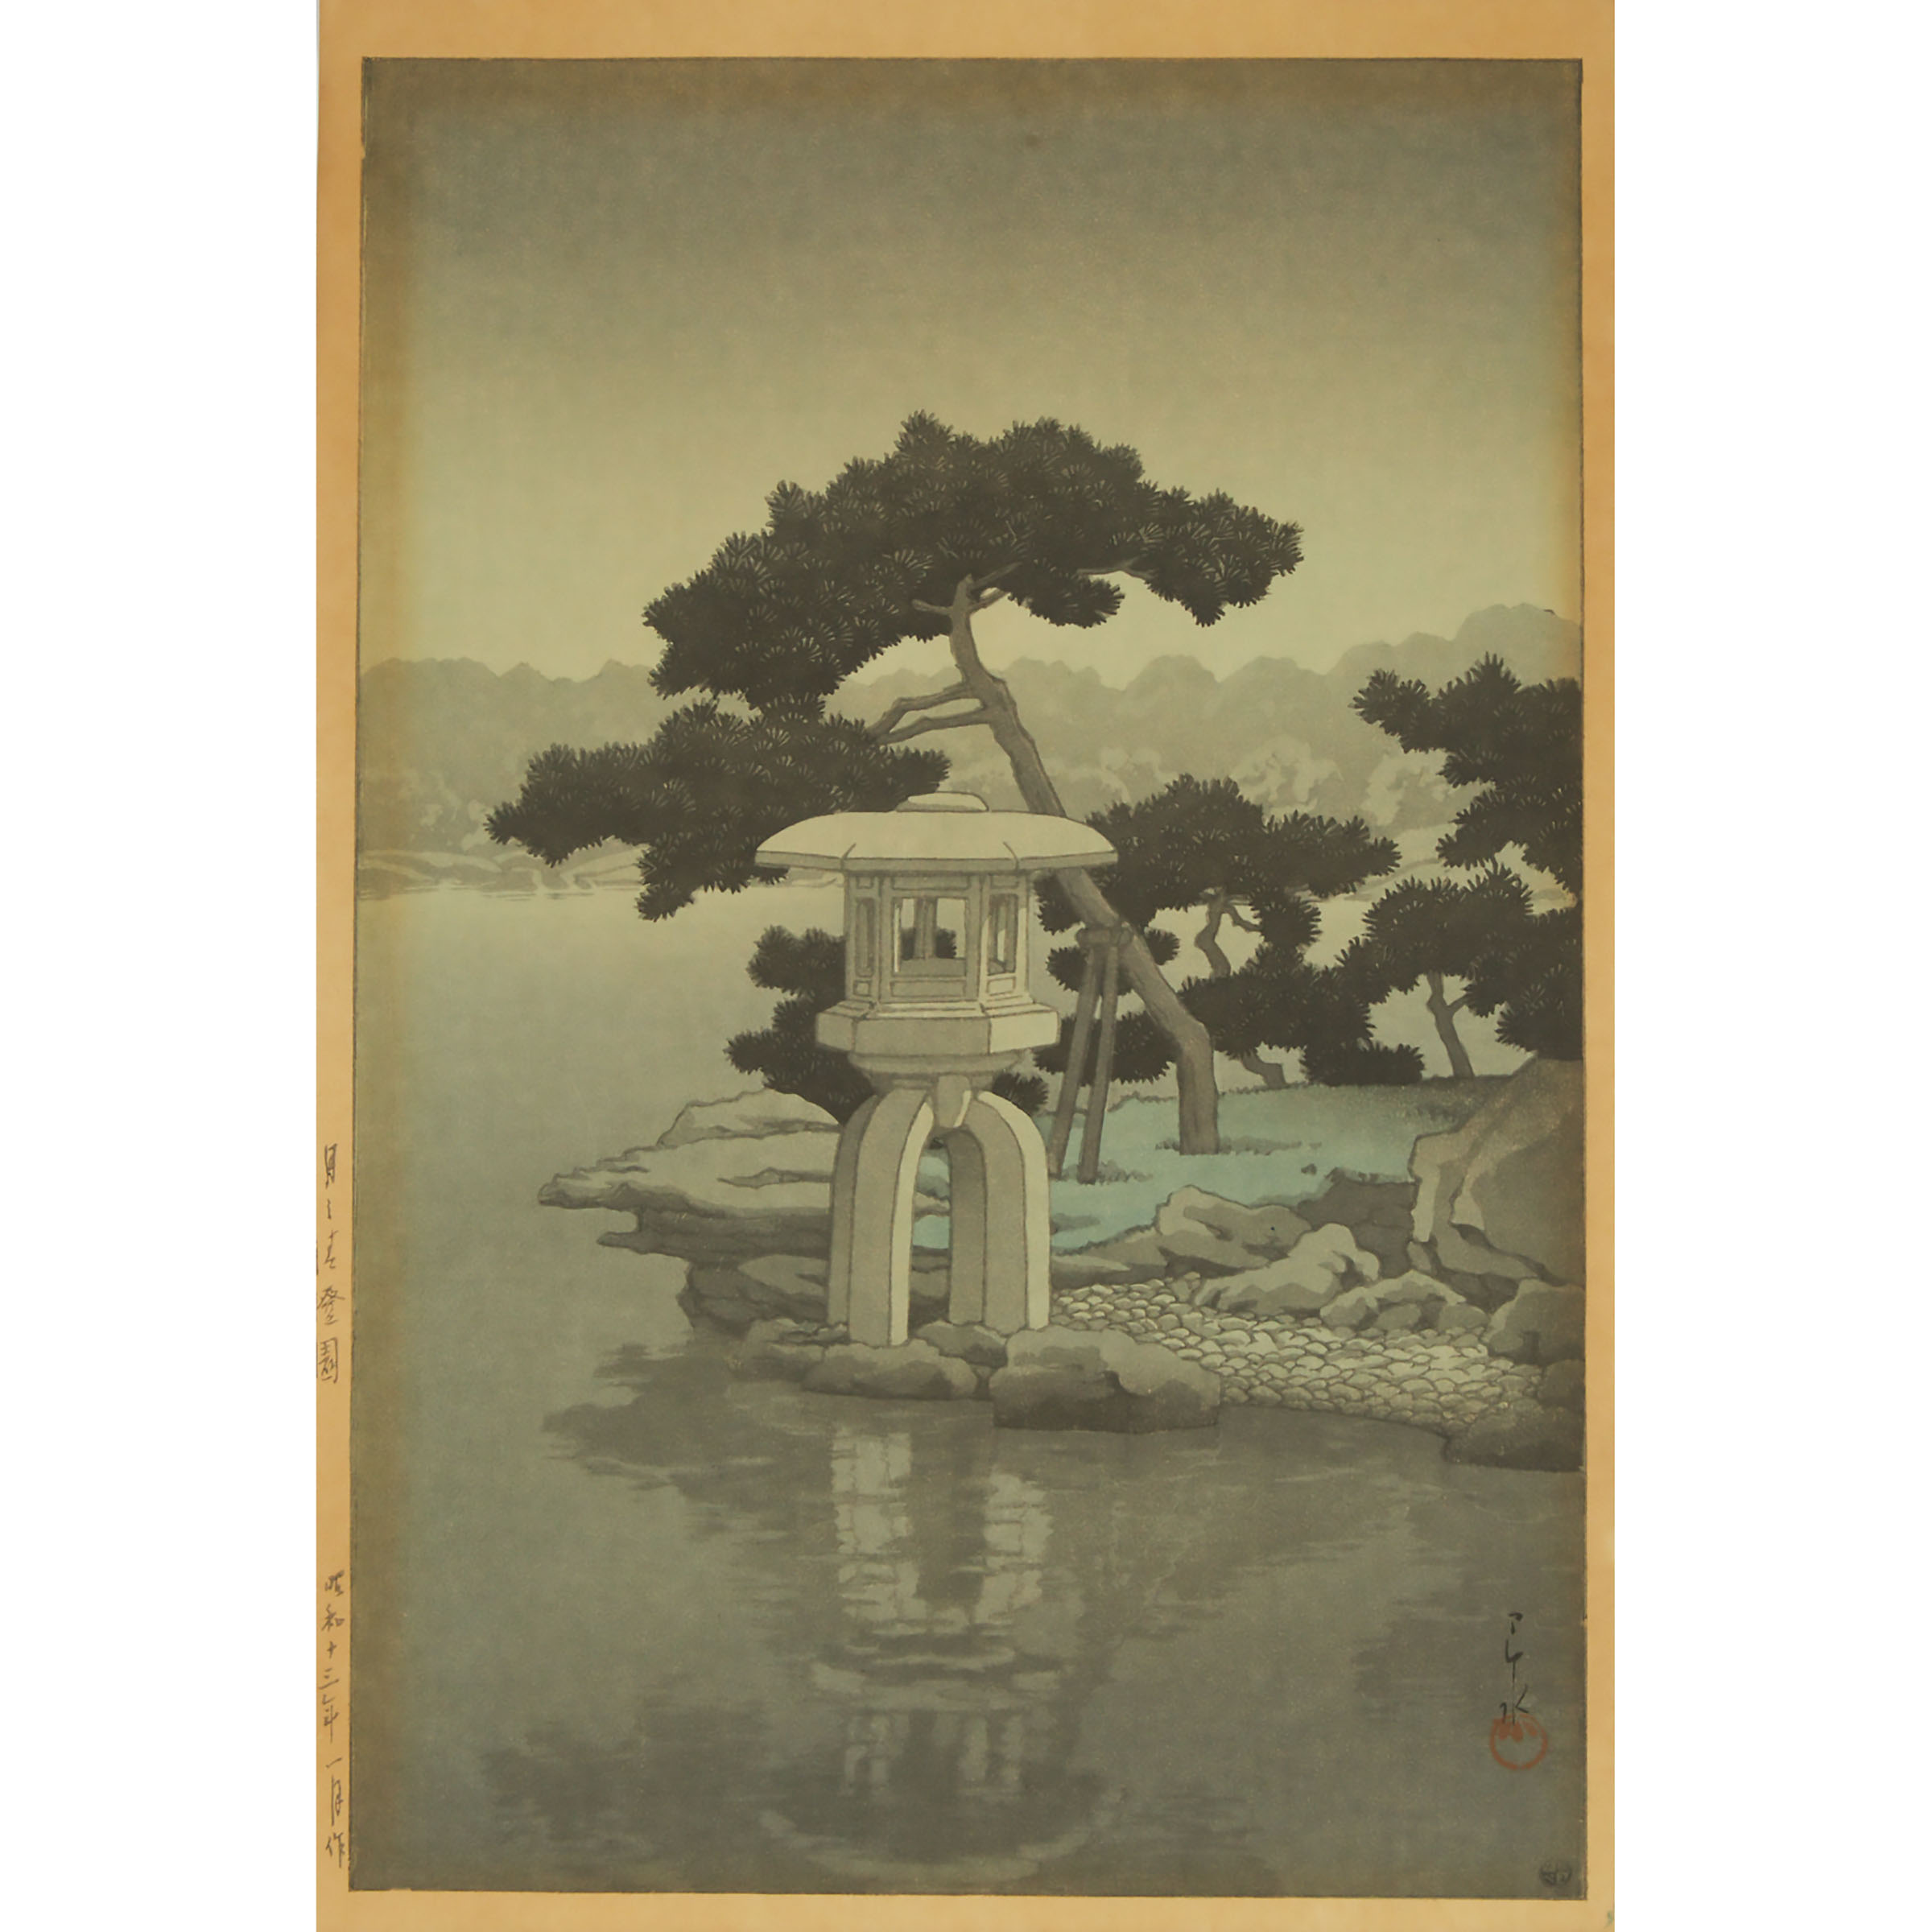 Kawase Hasui (1883-1957), Moonlight Over Kiyosumi/Seichoen Garden, Circa 1946-1957